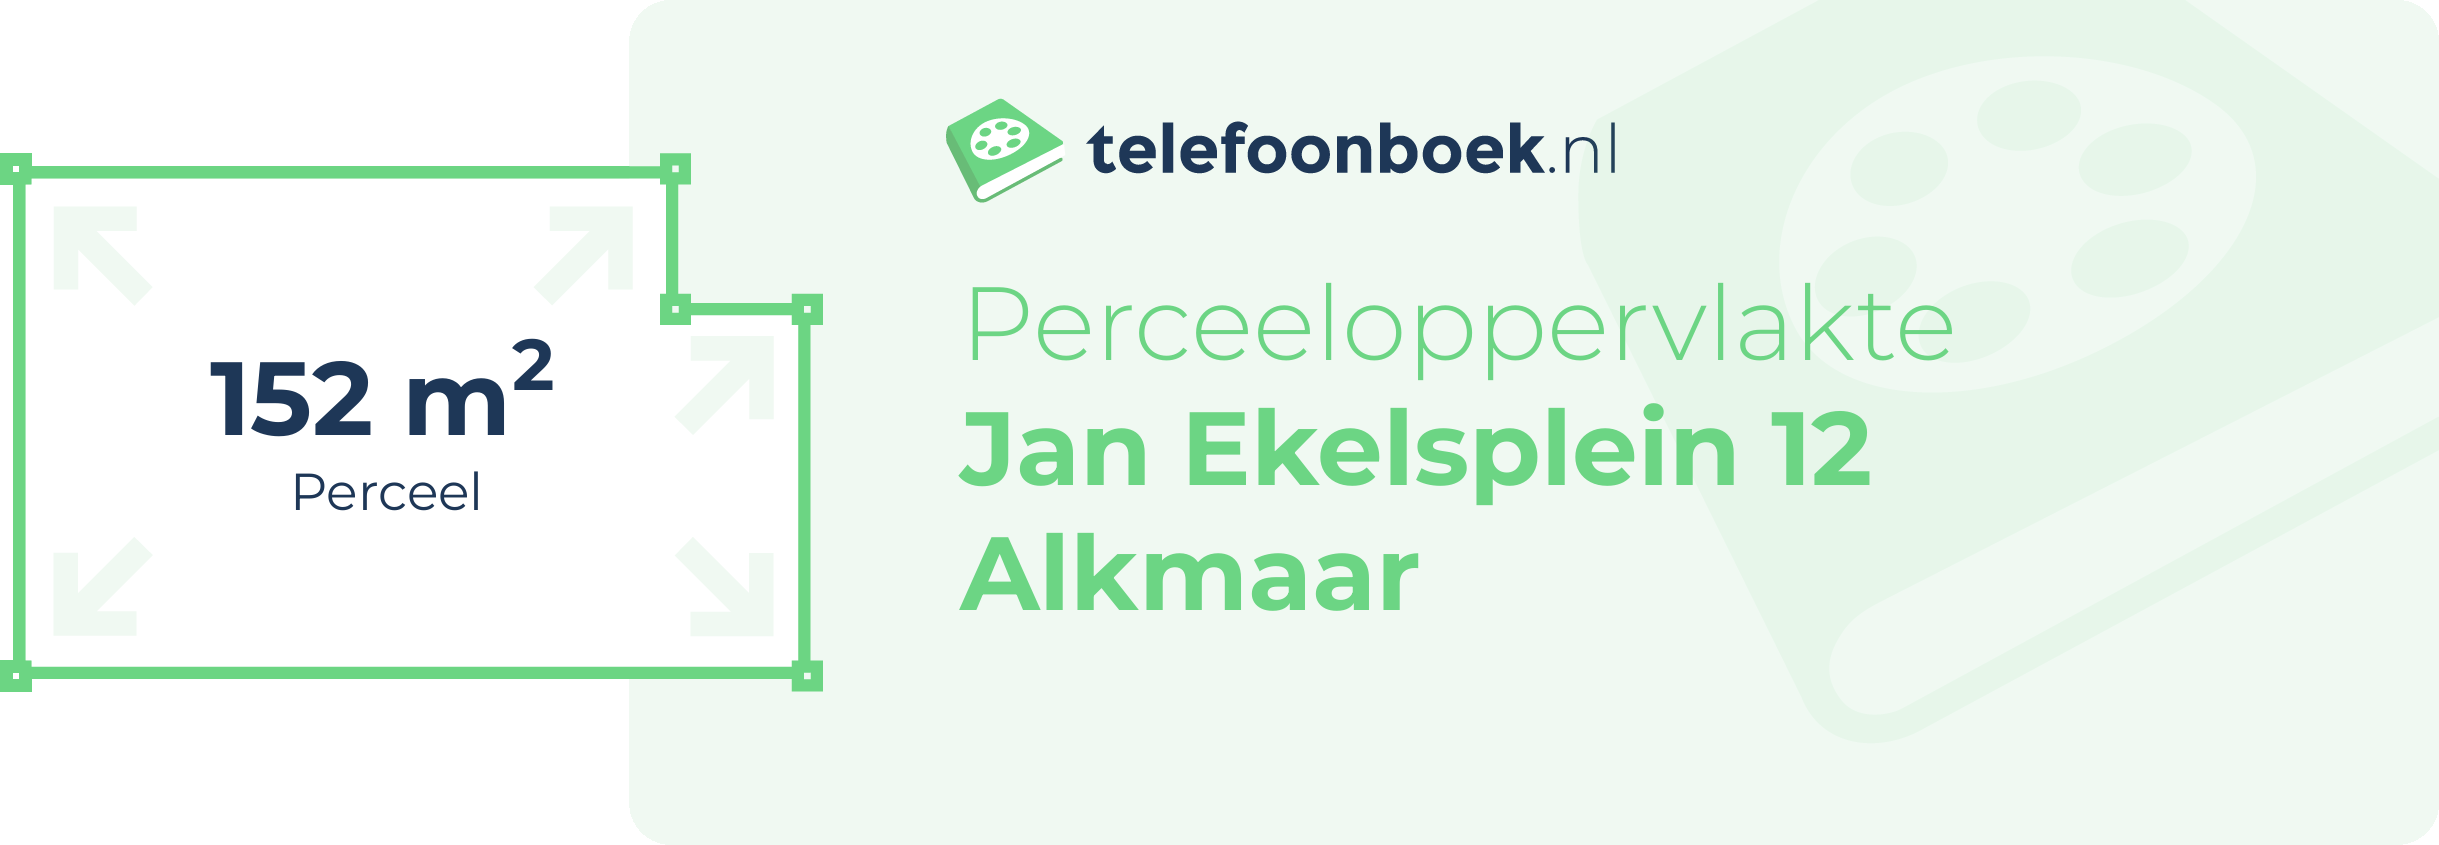 Perceeloppervlakte Jan Ekelsplein 12 Alkmaar